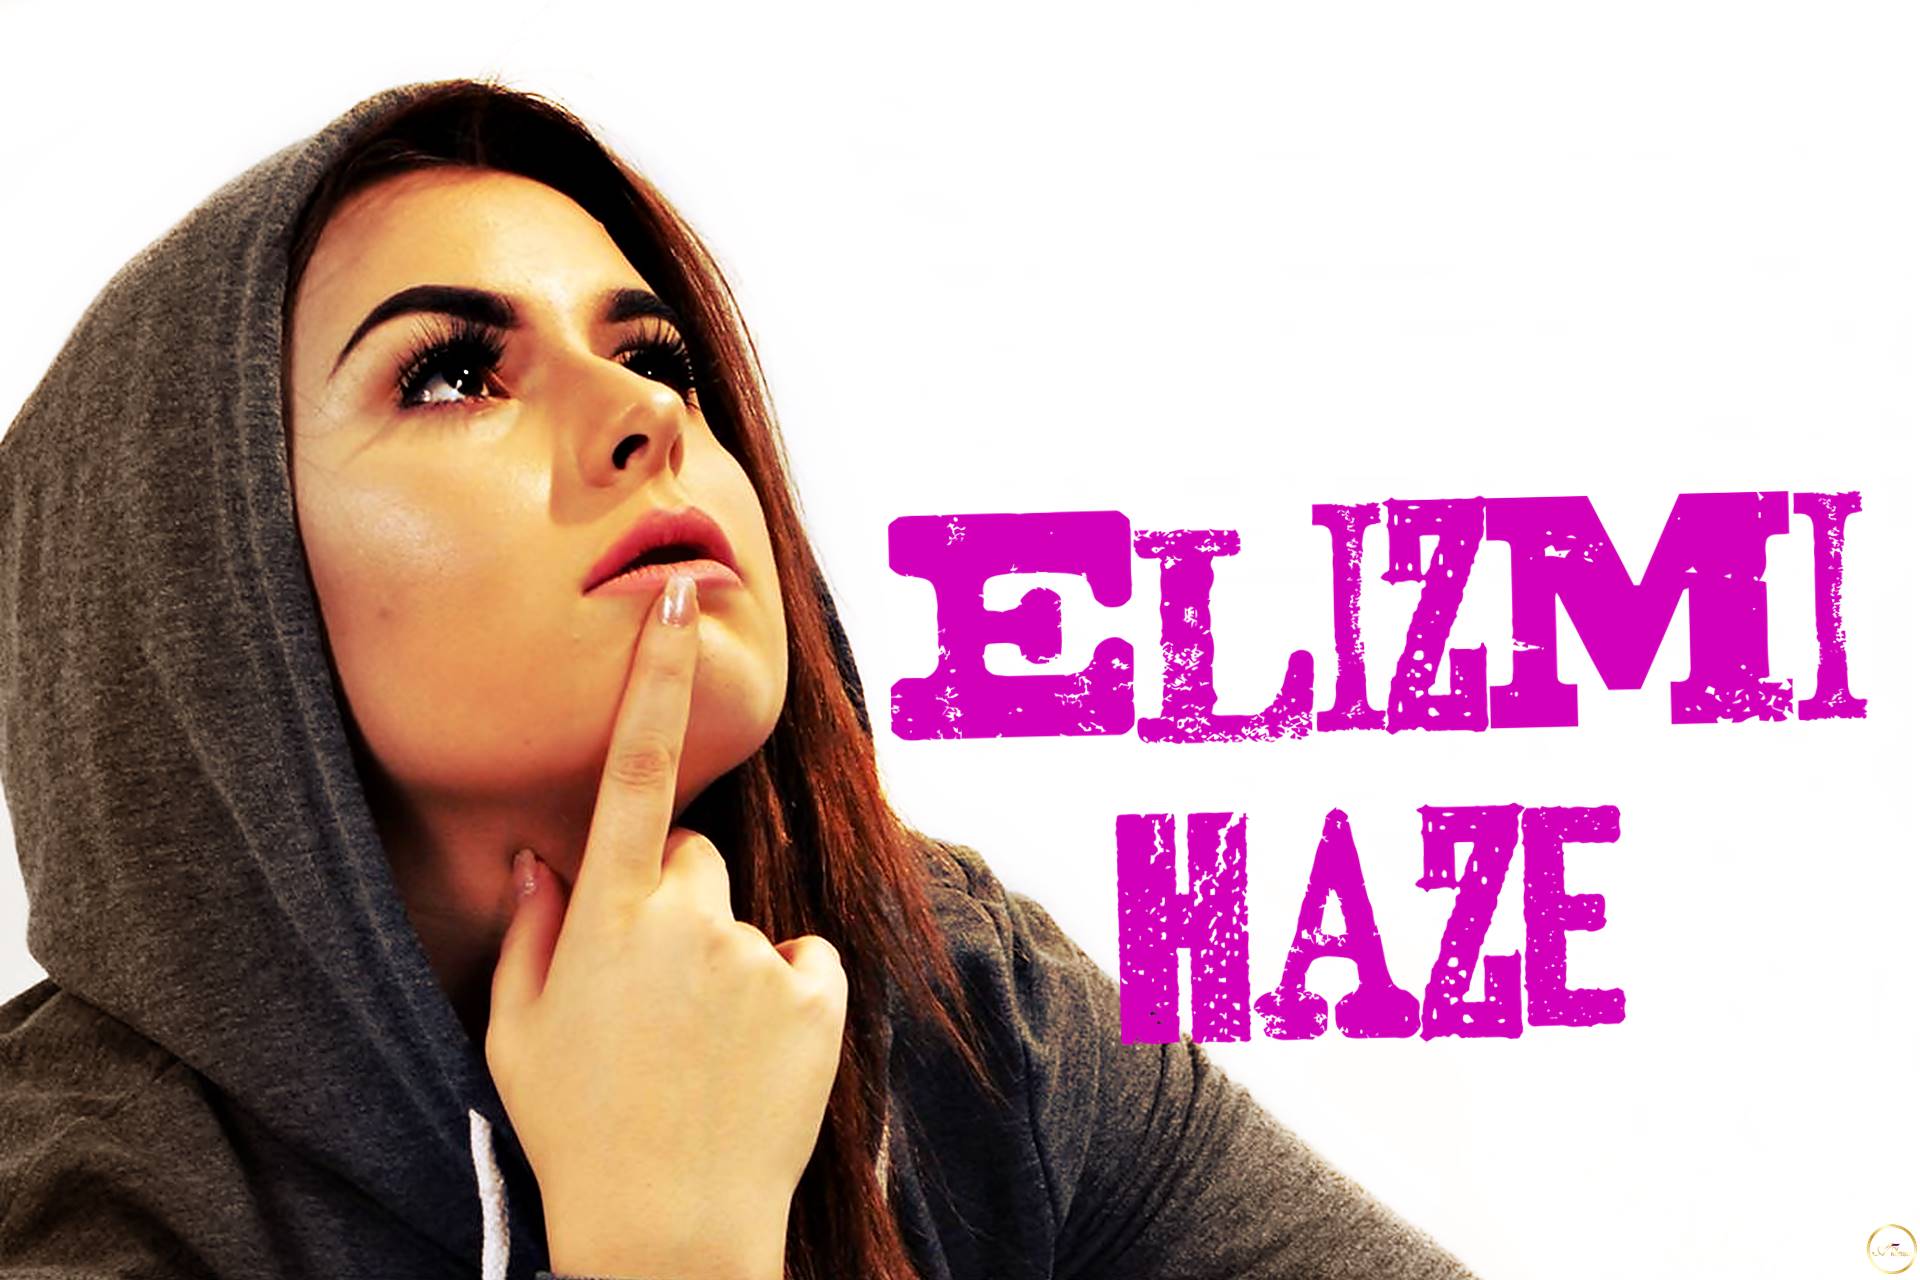 Elizmi Haze